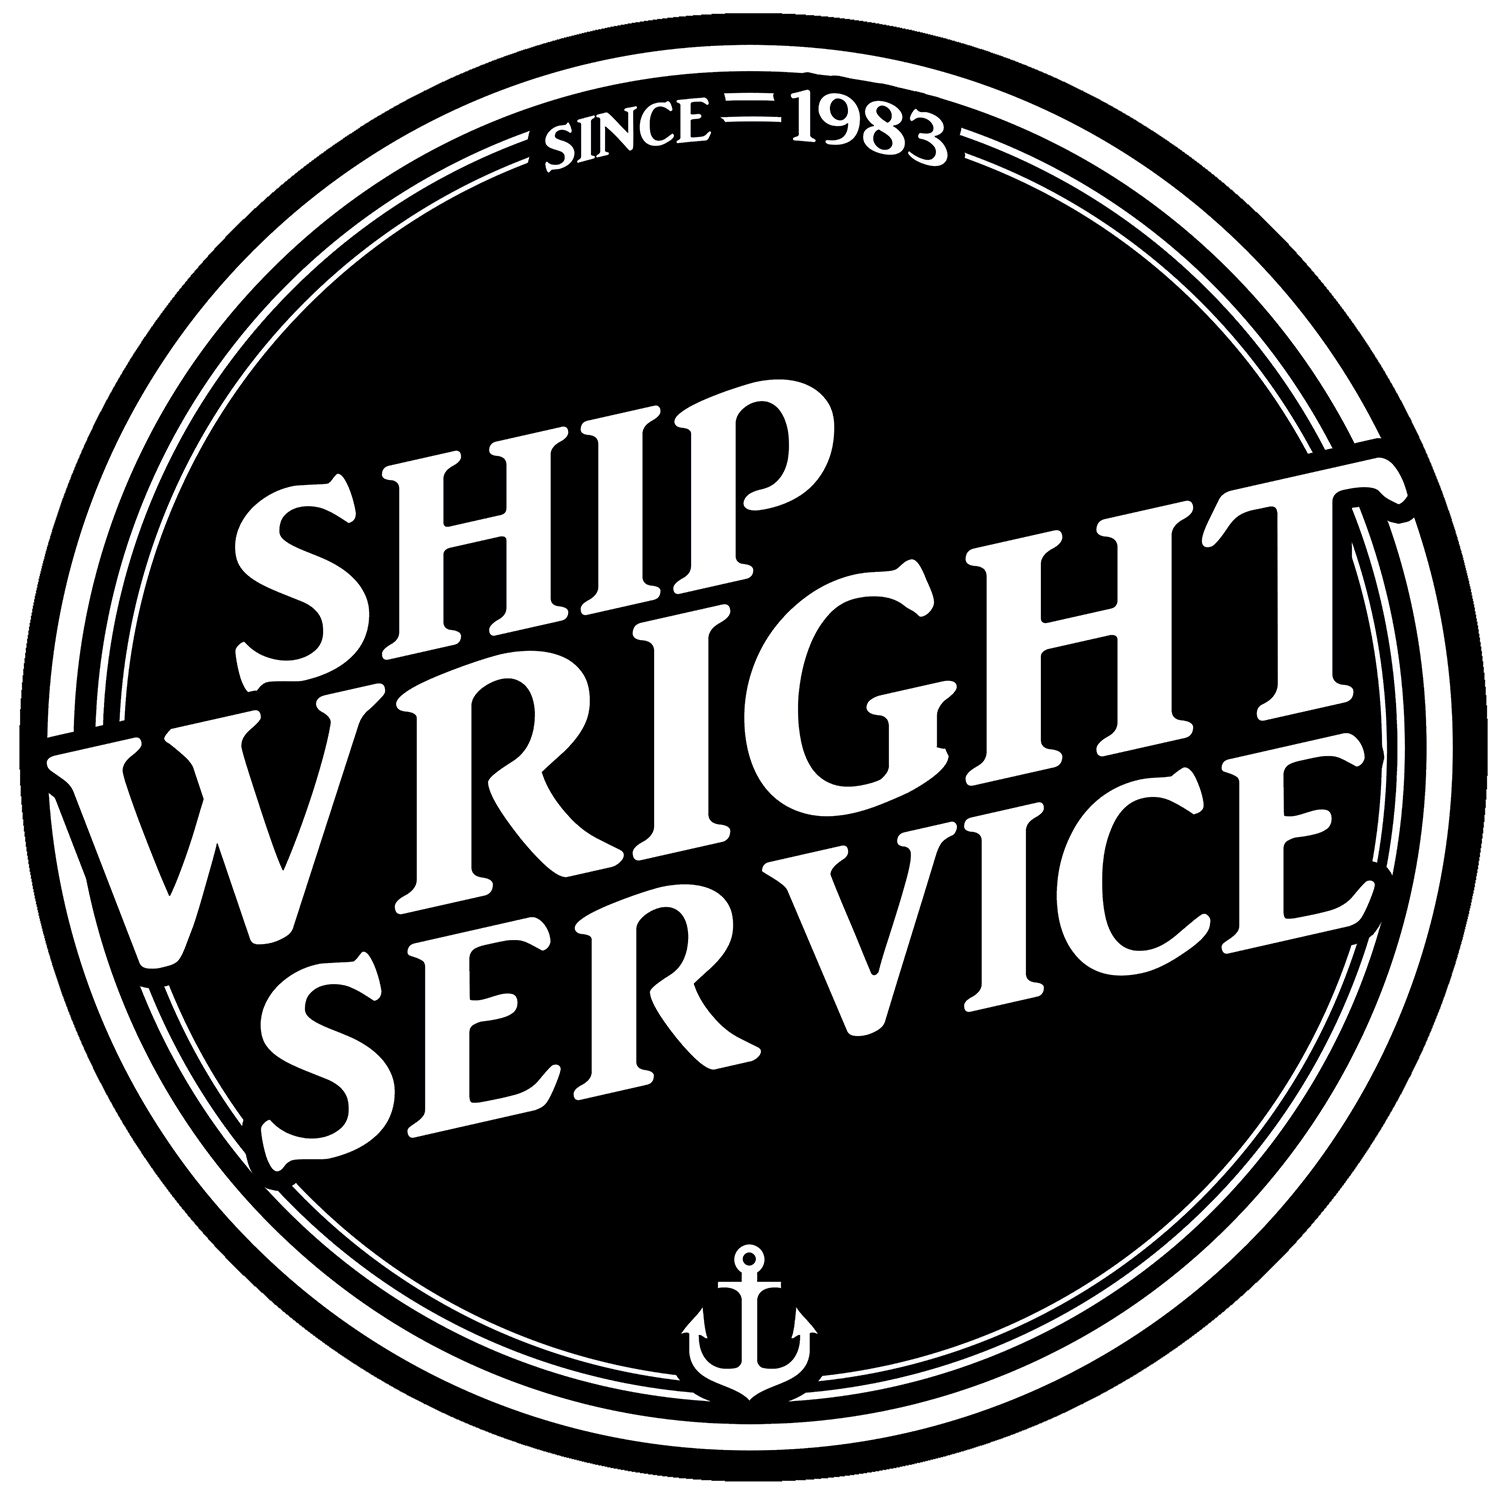 Shipwright Service